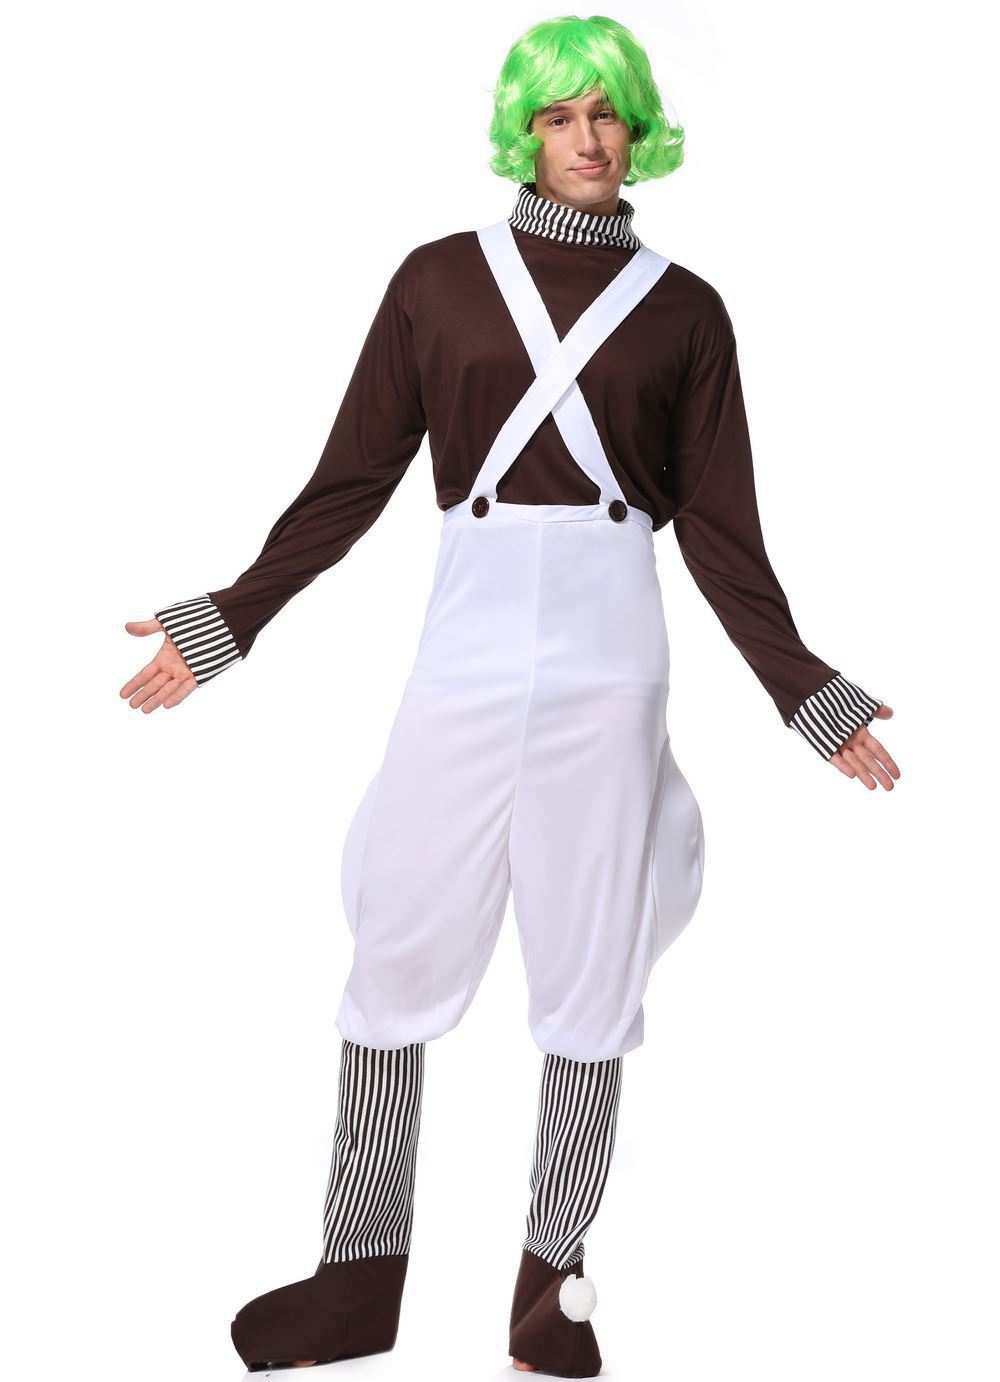  Fun Costumes Willy Wonka Plus Size Adult Oompa Loompa